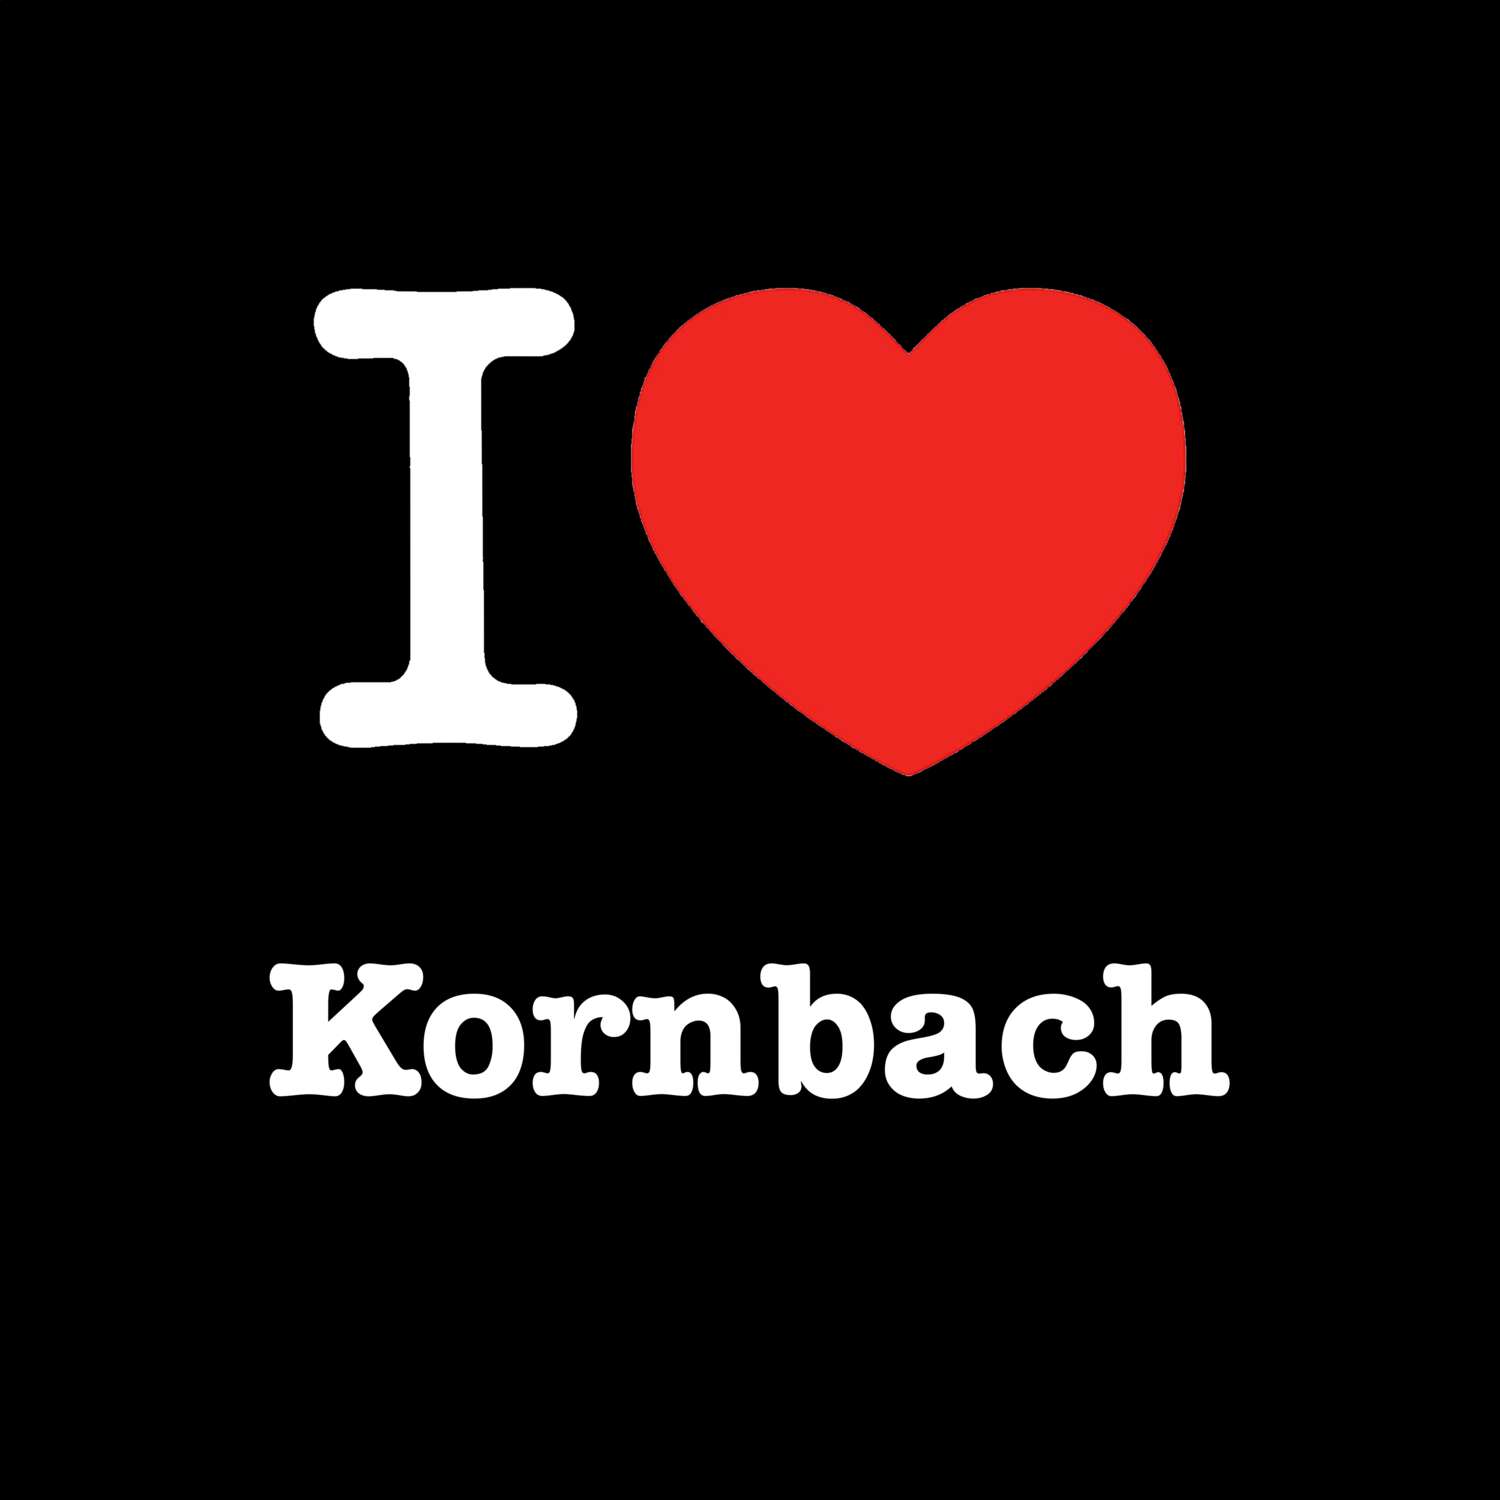 Kornbach T-Shirt »I love«